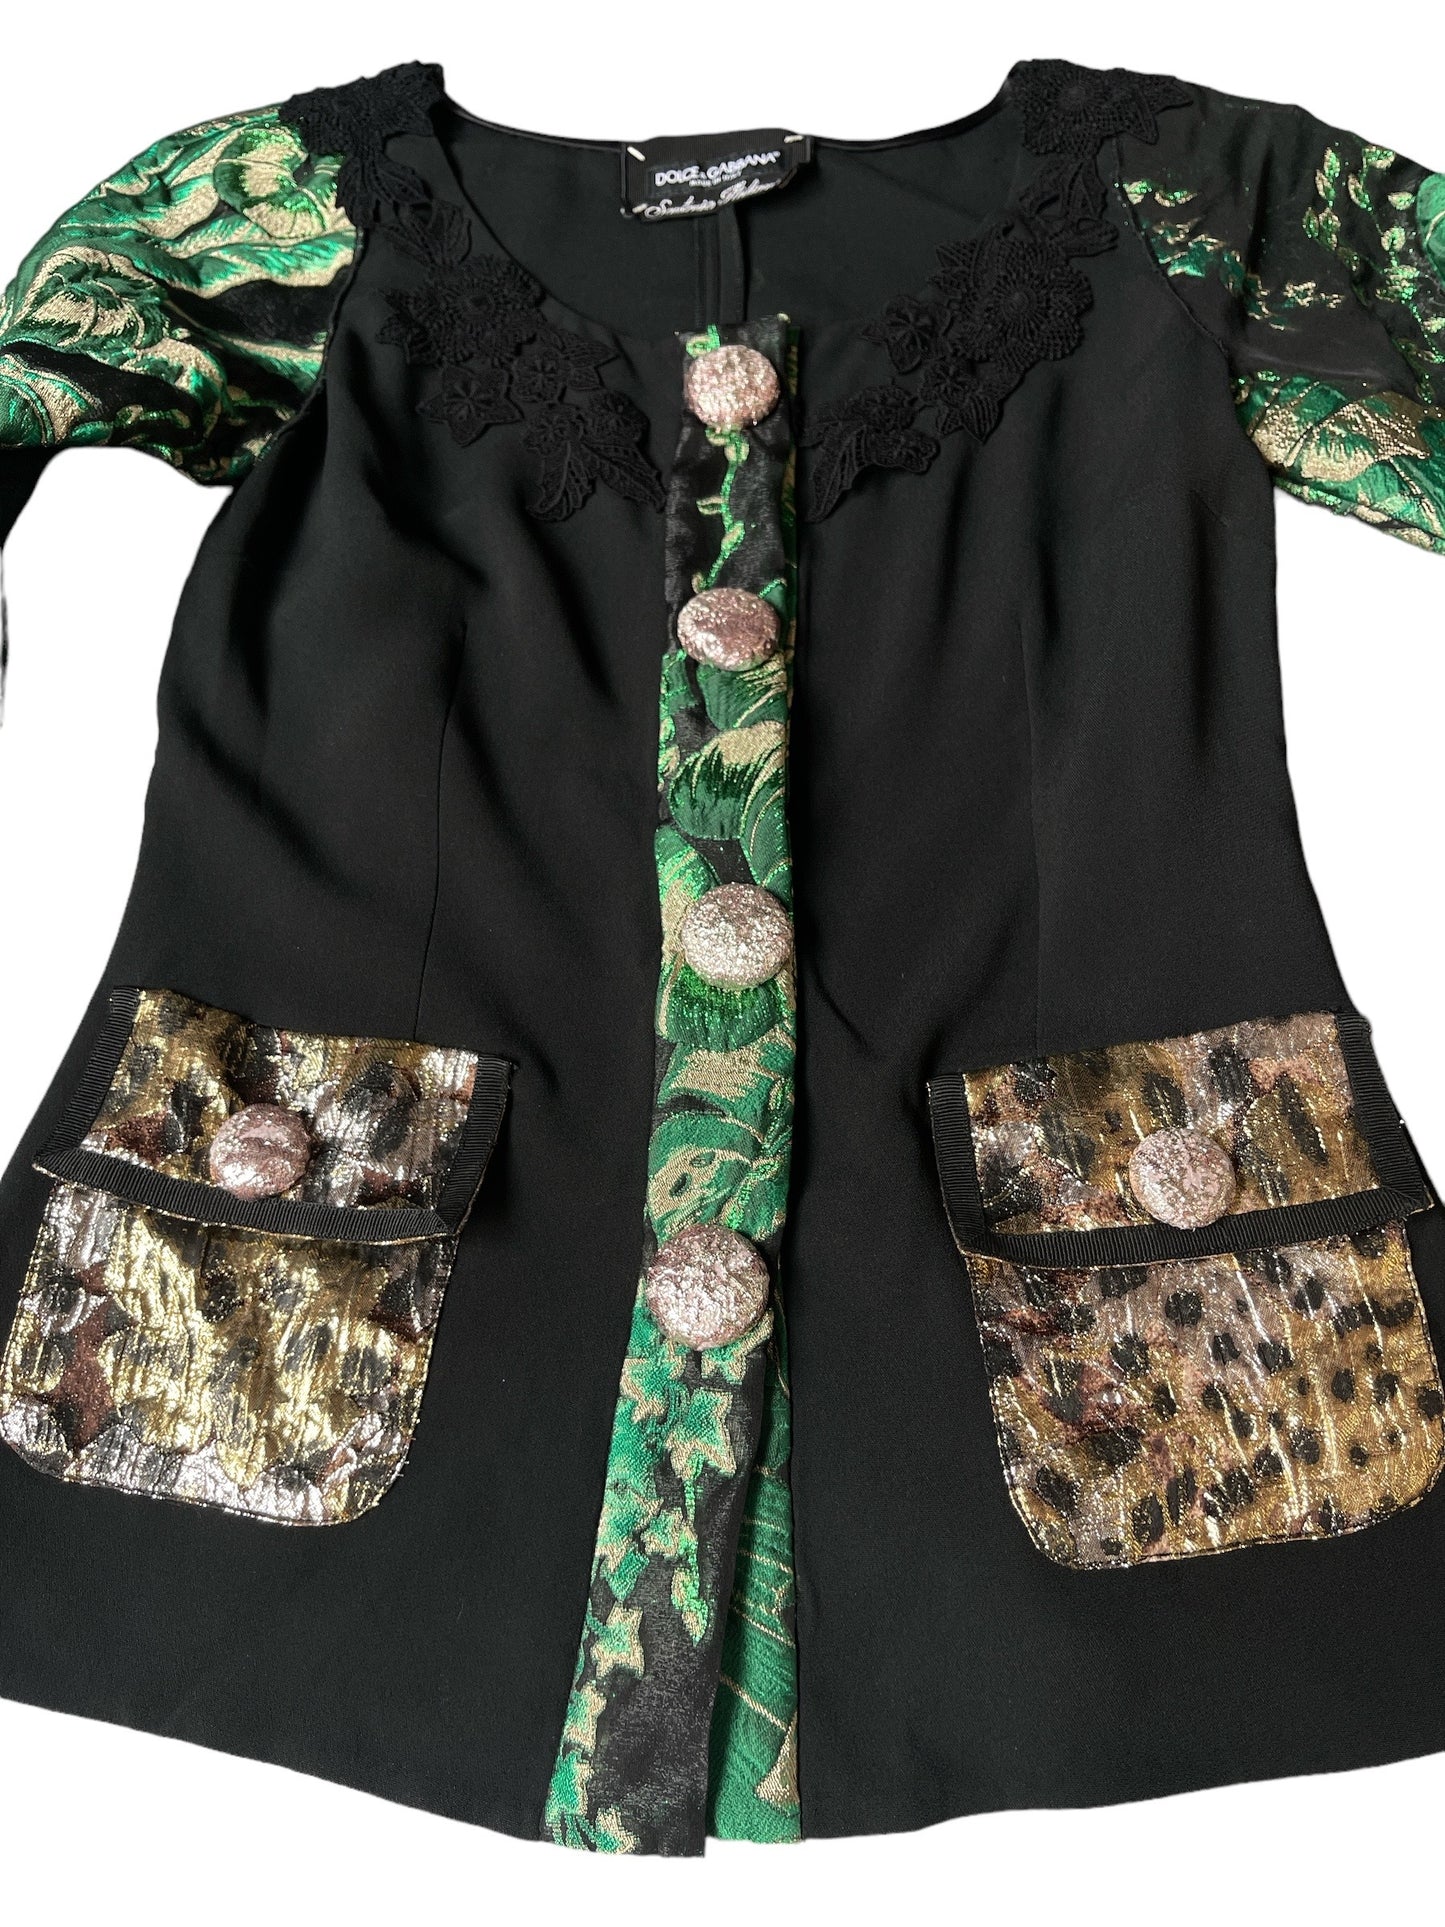 Dolce & Gabbana Cady Jacket With Jacquard Details -size S Designer Luxury Fashion